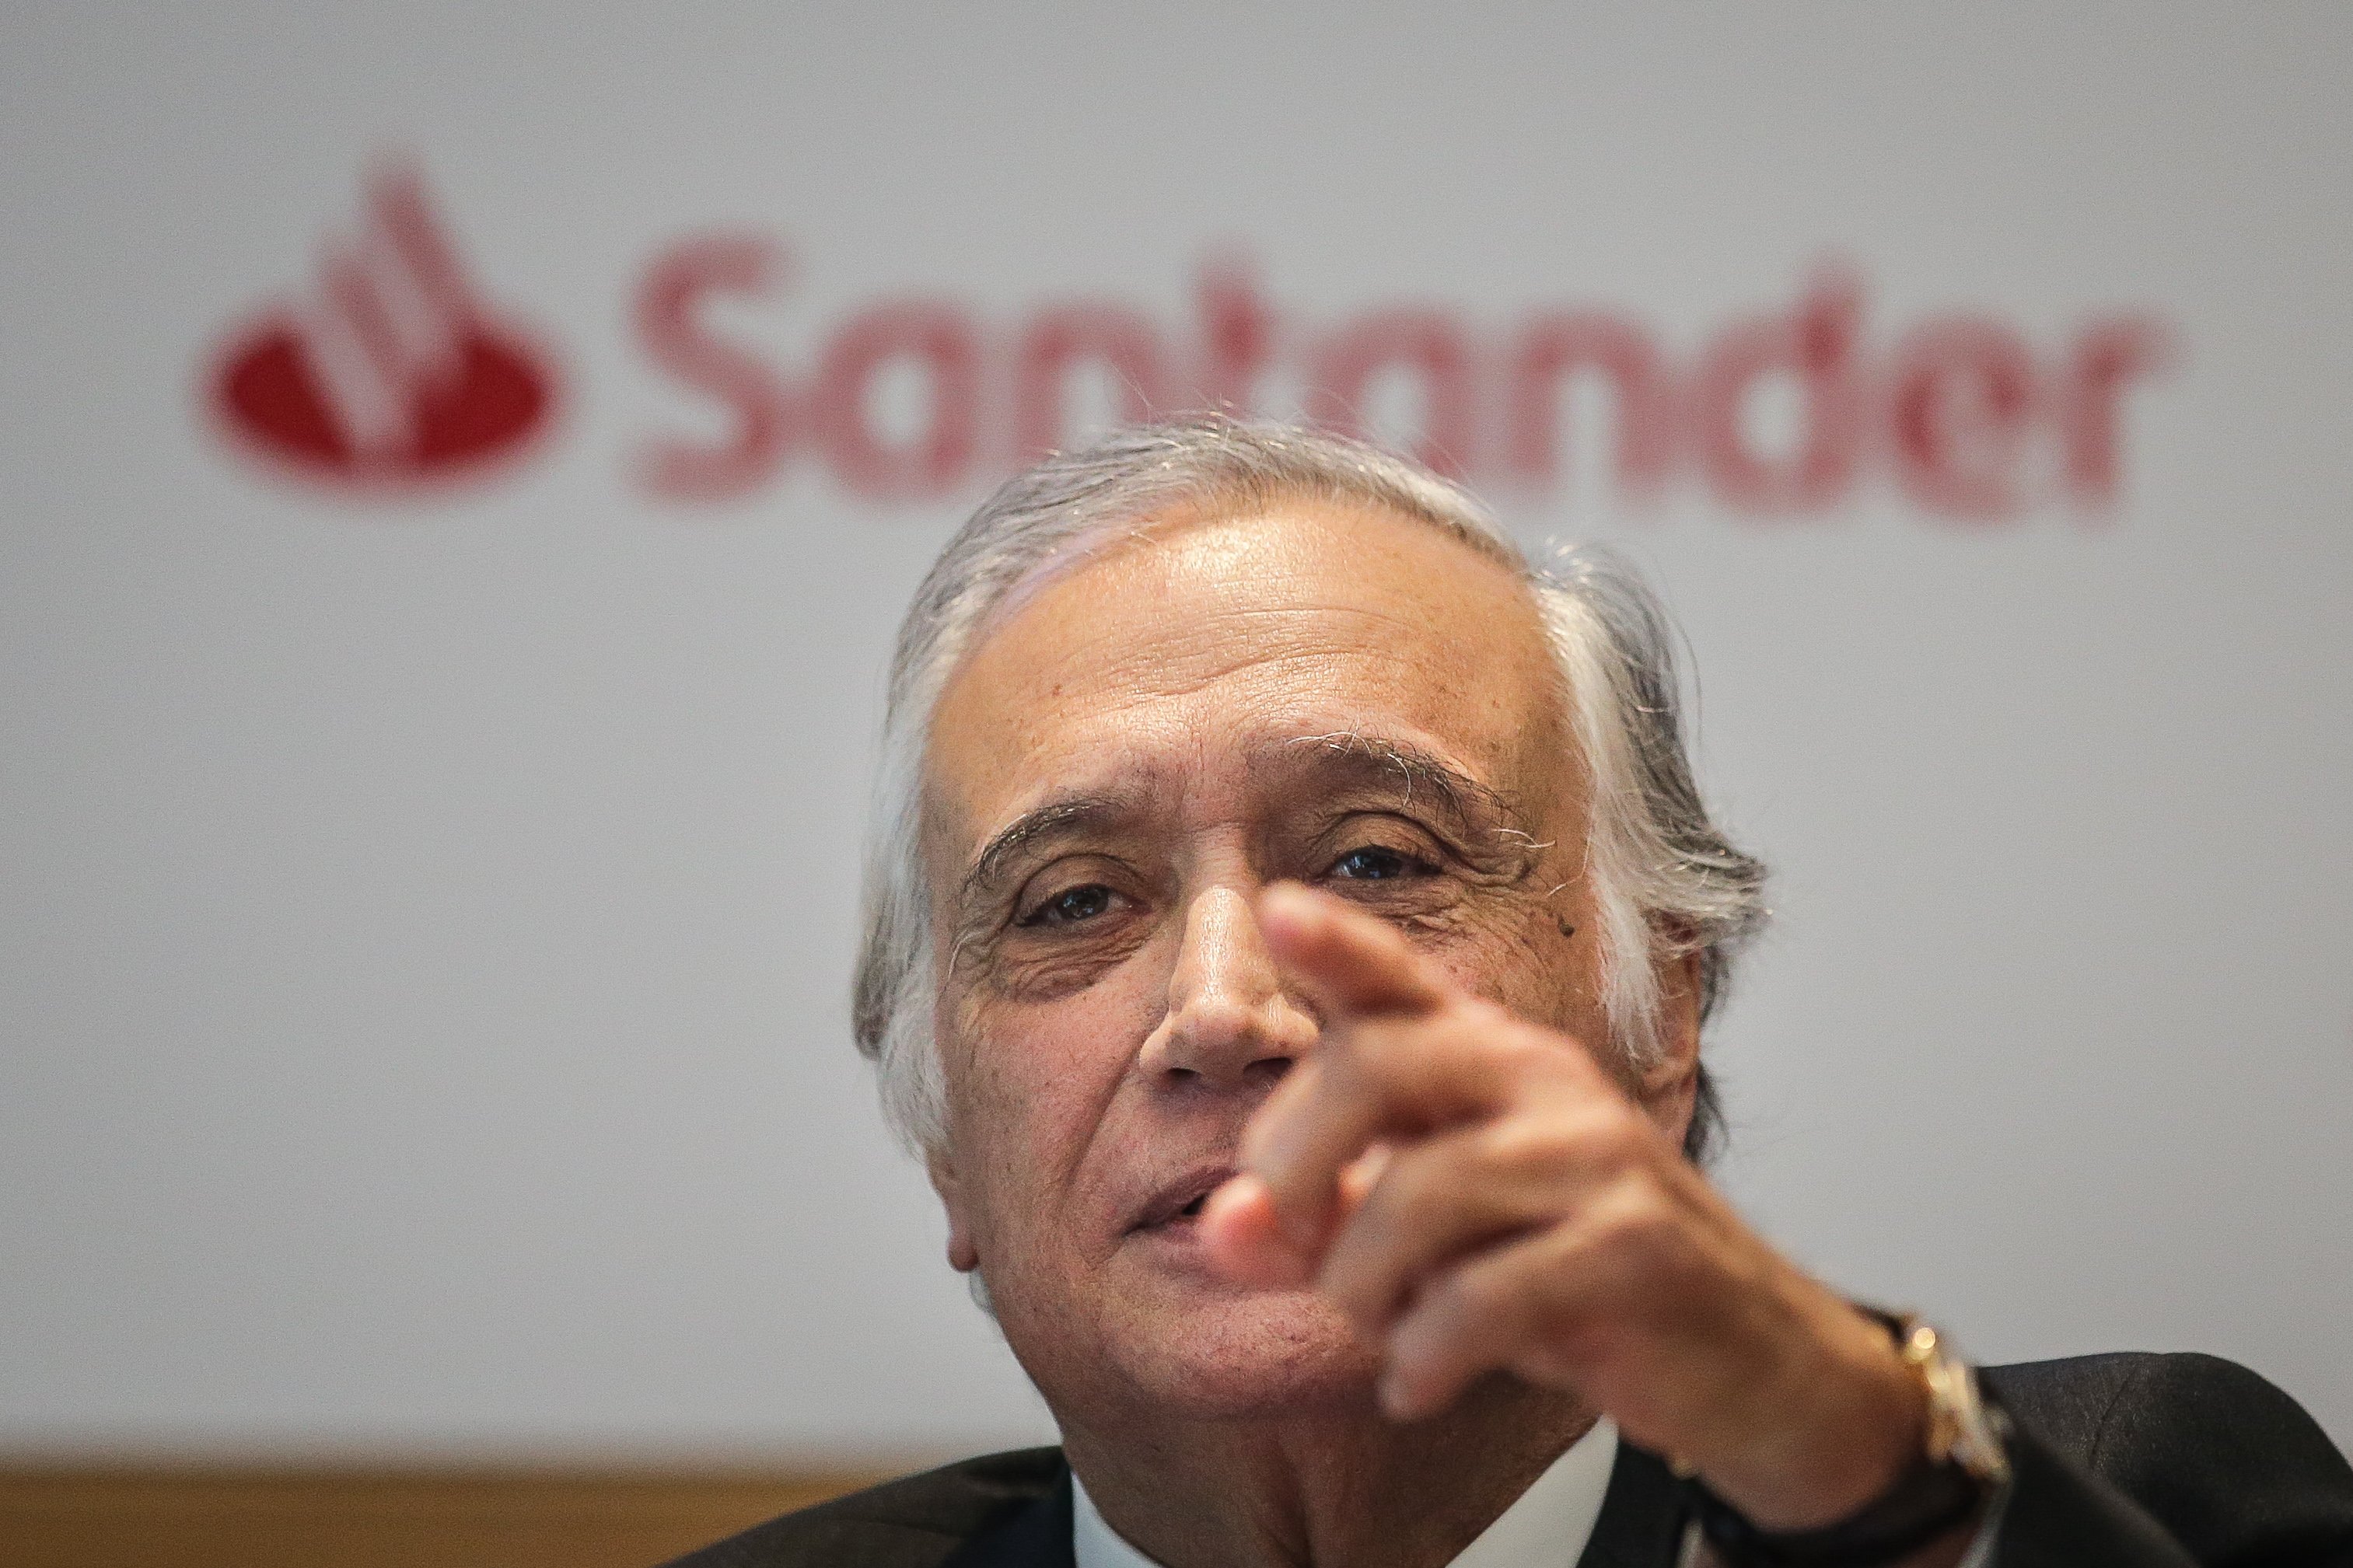 Santander Totta contra proposta para refletir juros negativos nos empréstimos